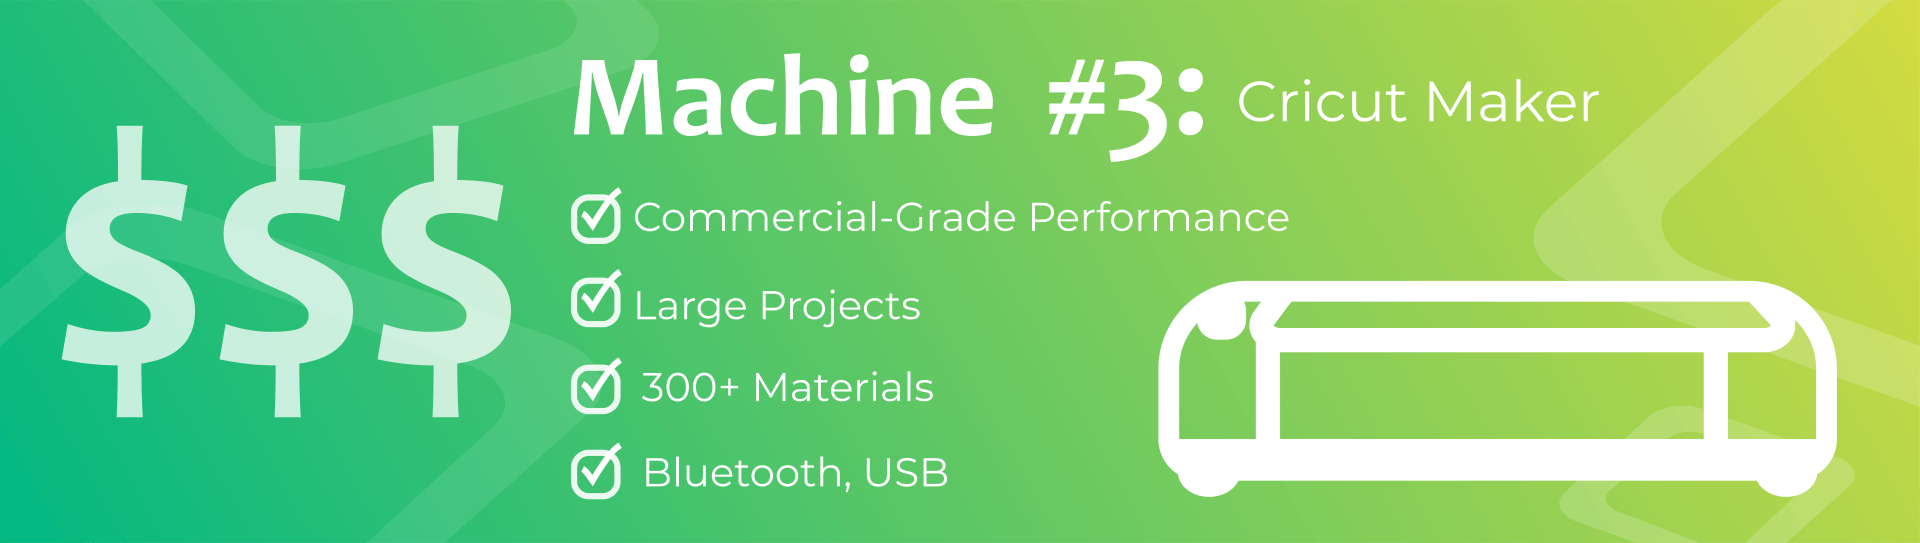 Machine #3 Graphic